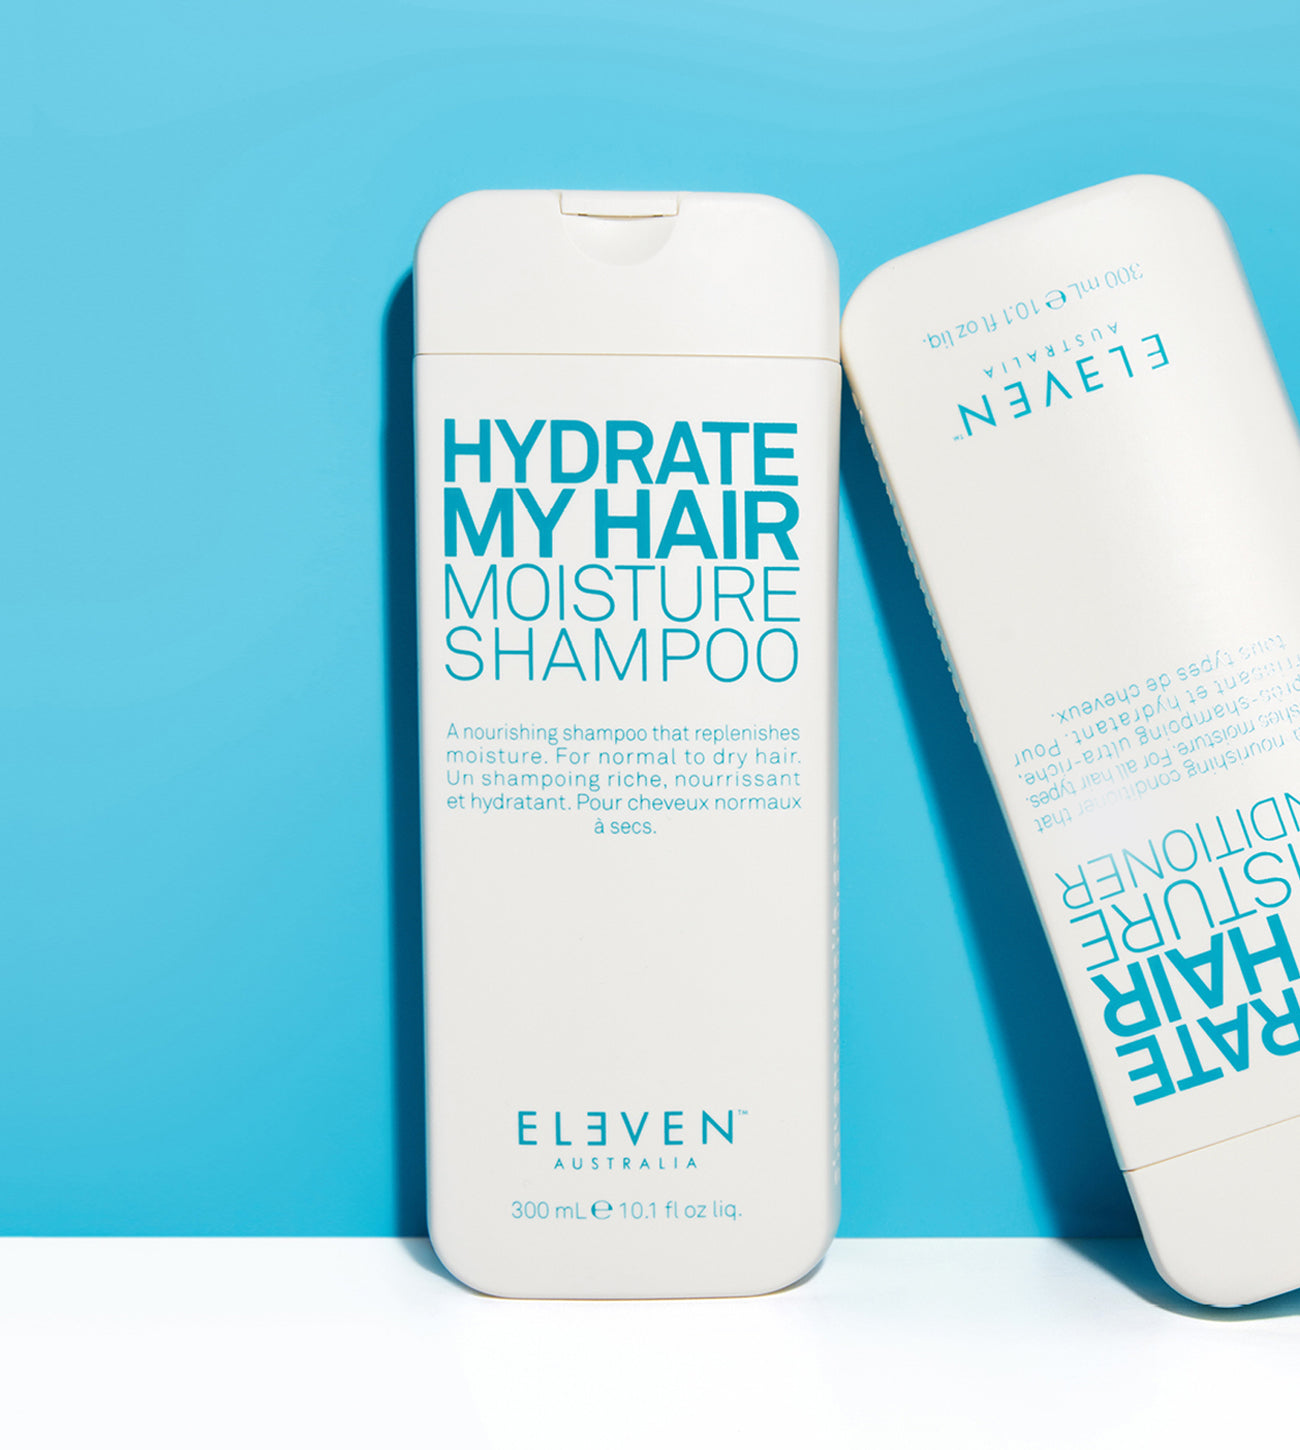 ELEVEN Australia HYDRATE MY HAIR MOISTURE SHAMPOO nourishing replenish moisture ELEVEN Shampoo